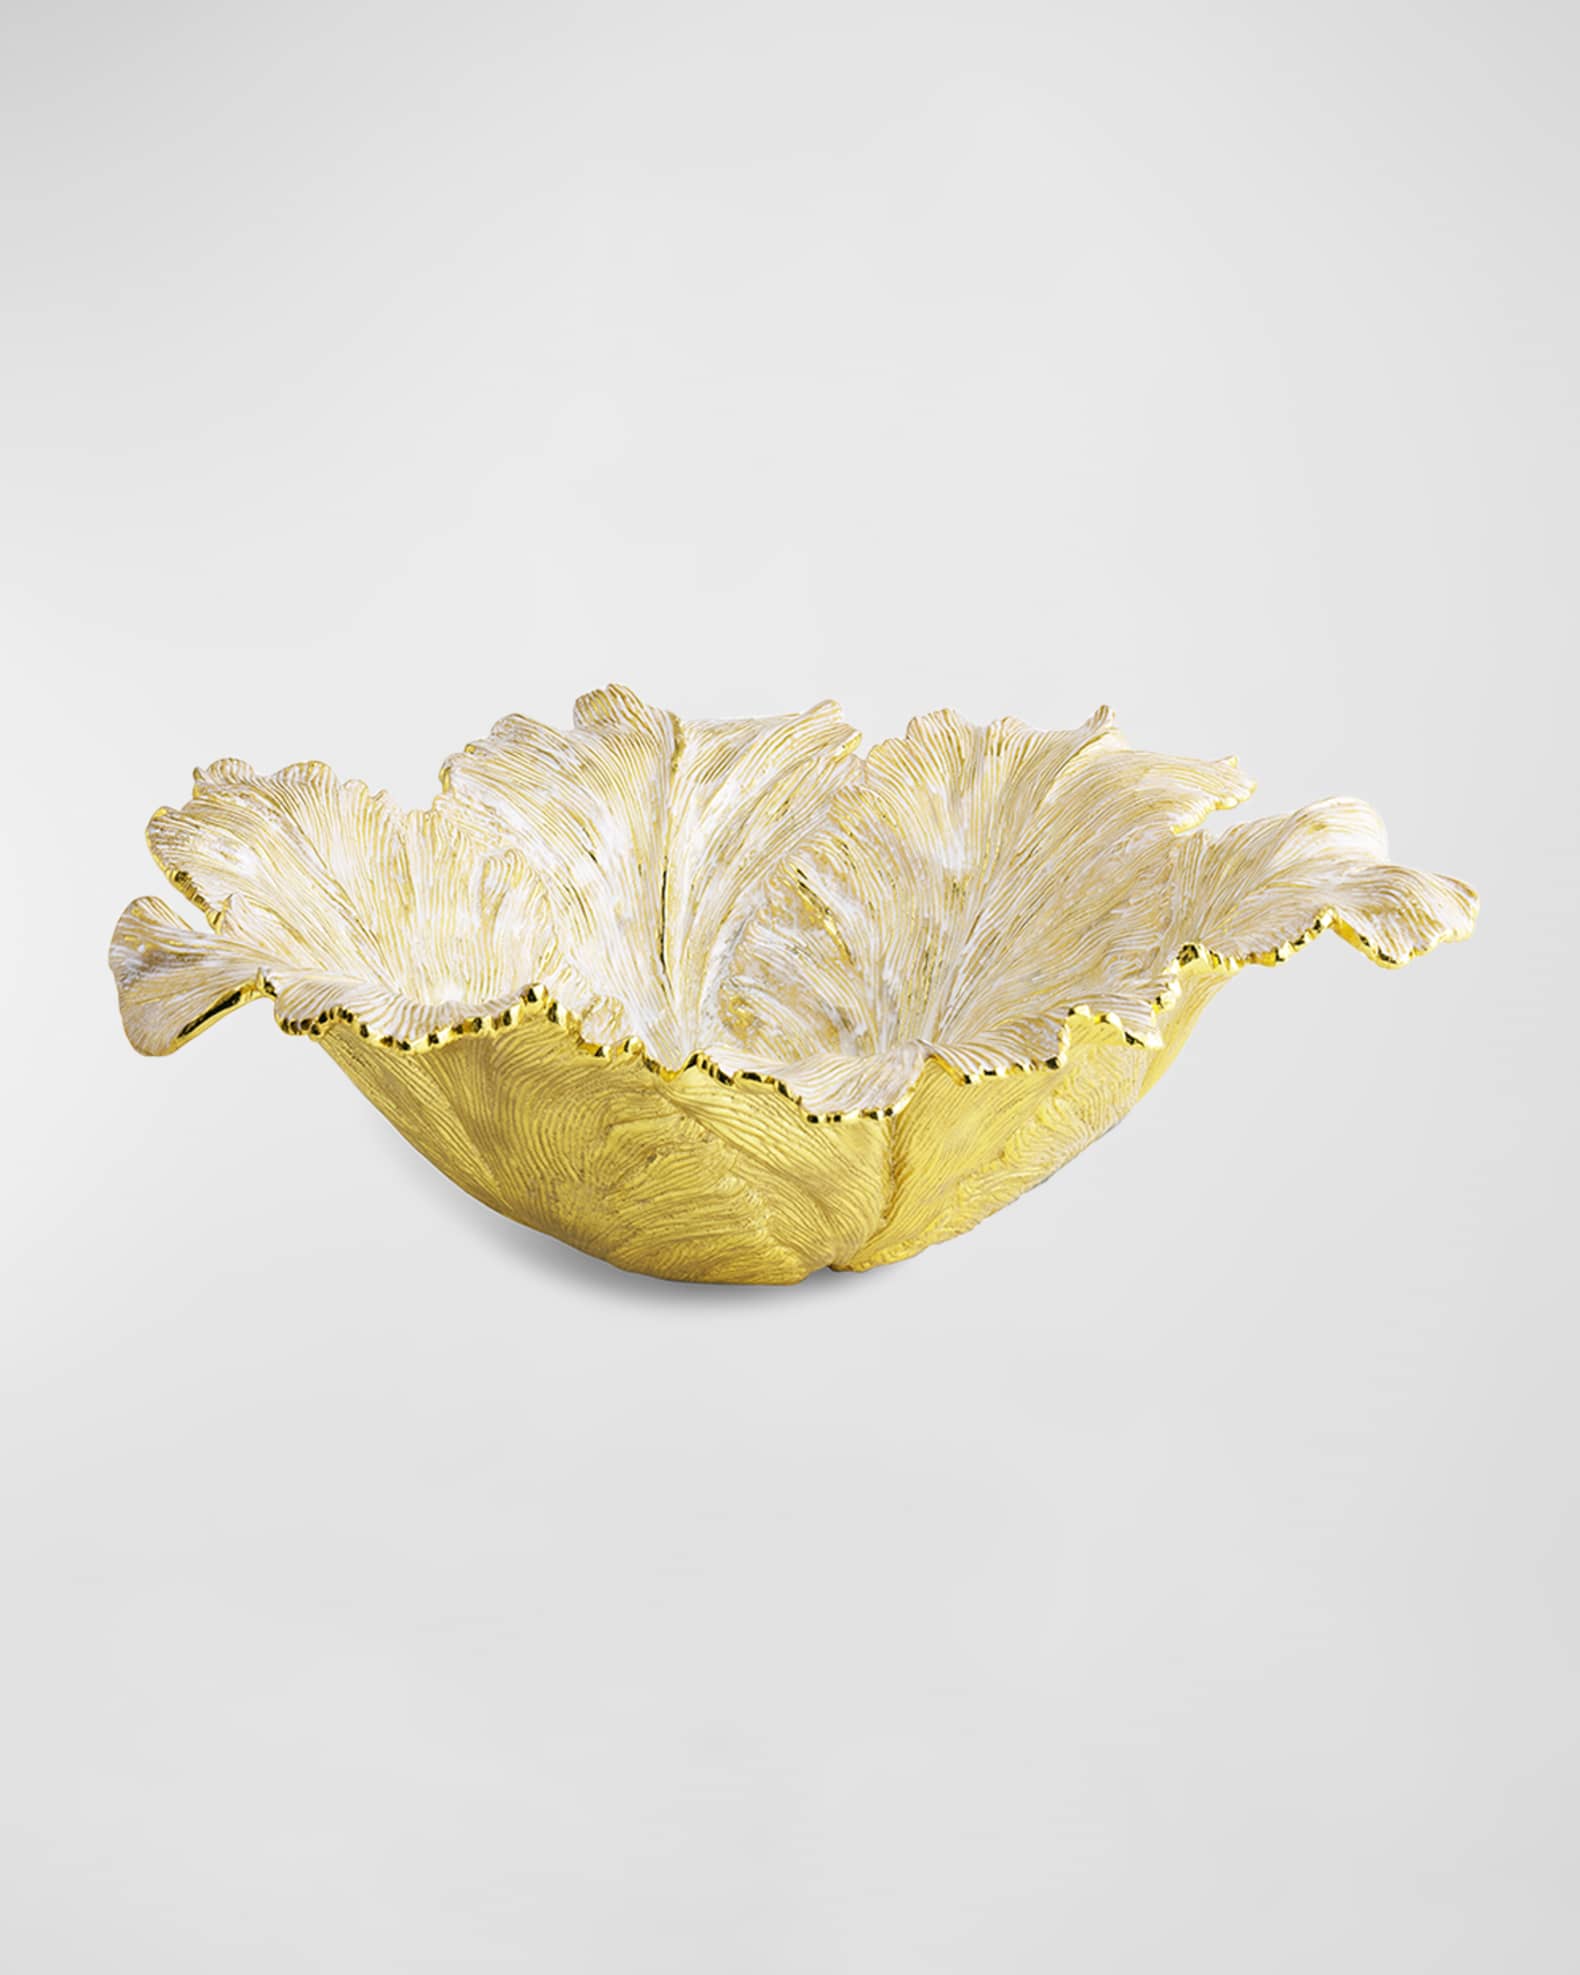 Michael Aram Tulip Centerpiece Bowl | Neiman Marcus